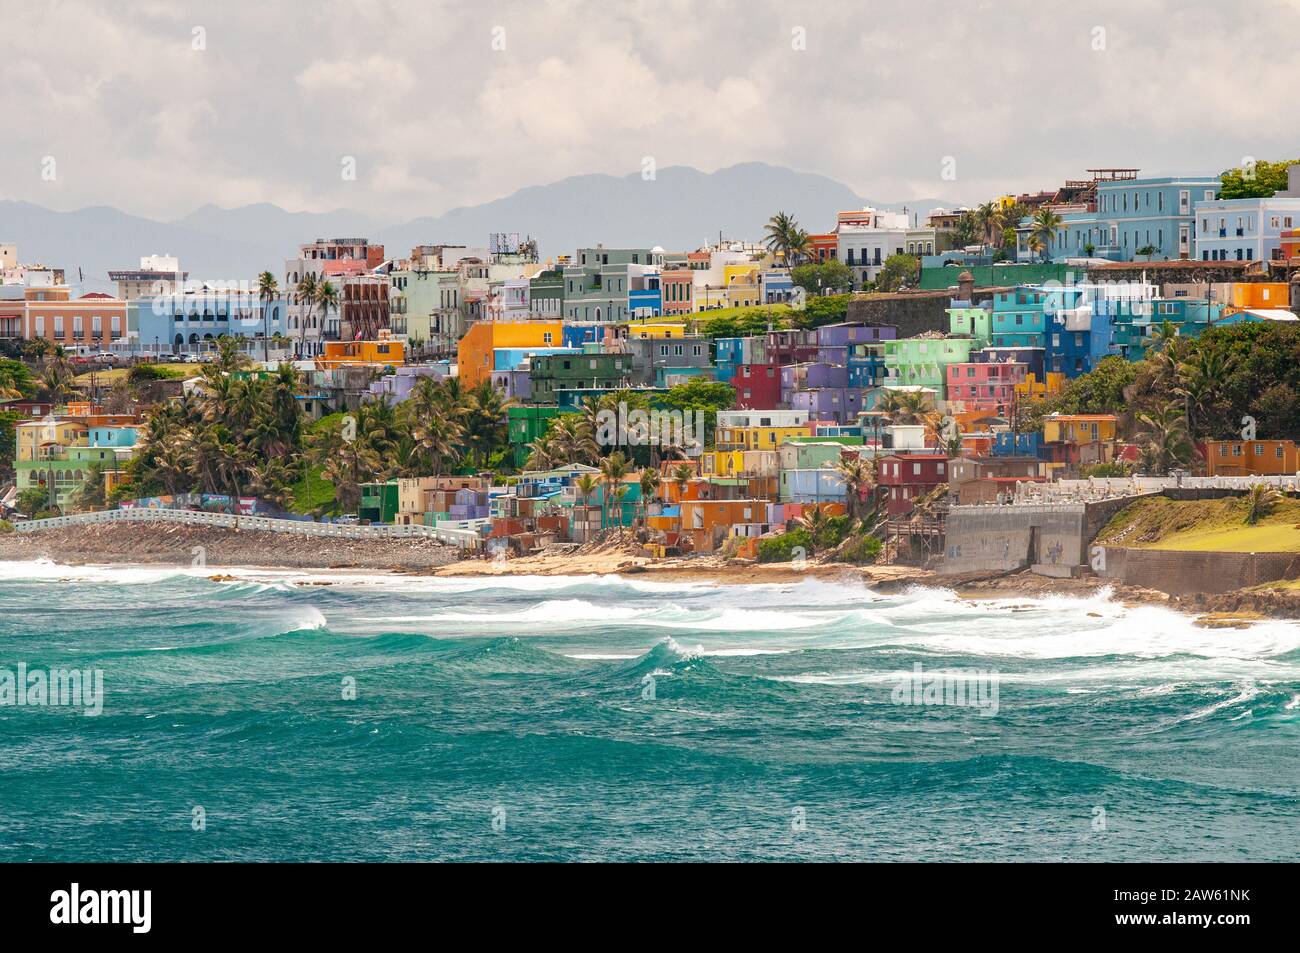 Des maisons colorées s'alignent sur la colline surplombant la plage de San Juan, Porto Rico. Banque D'Images